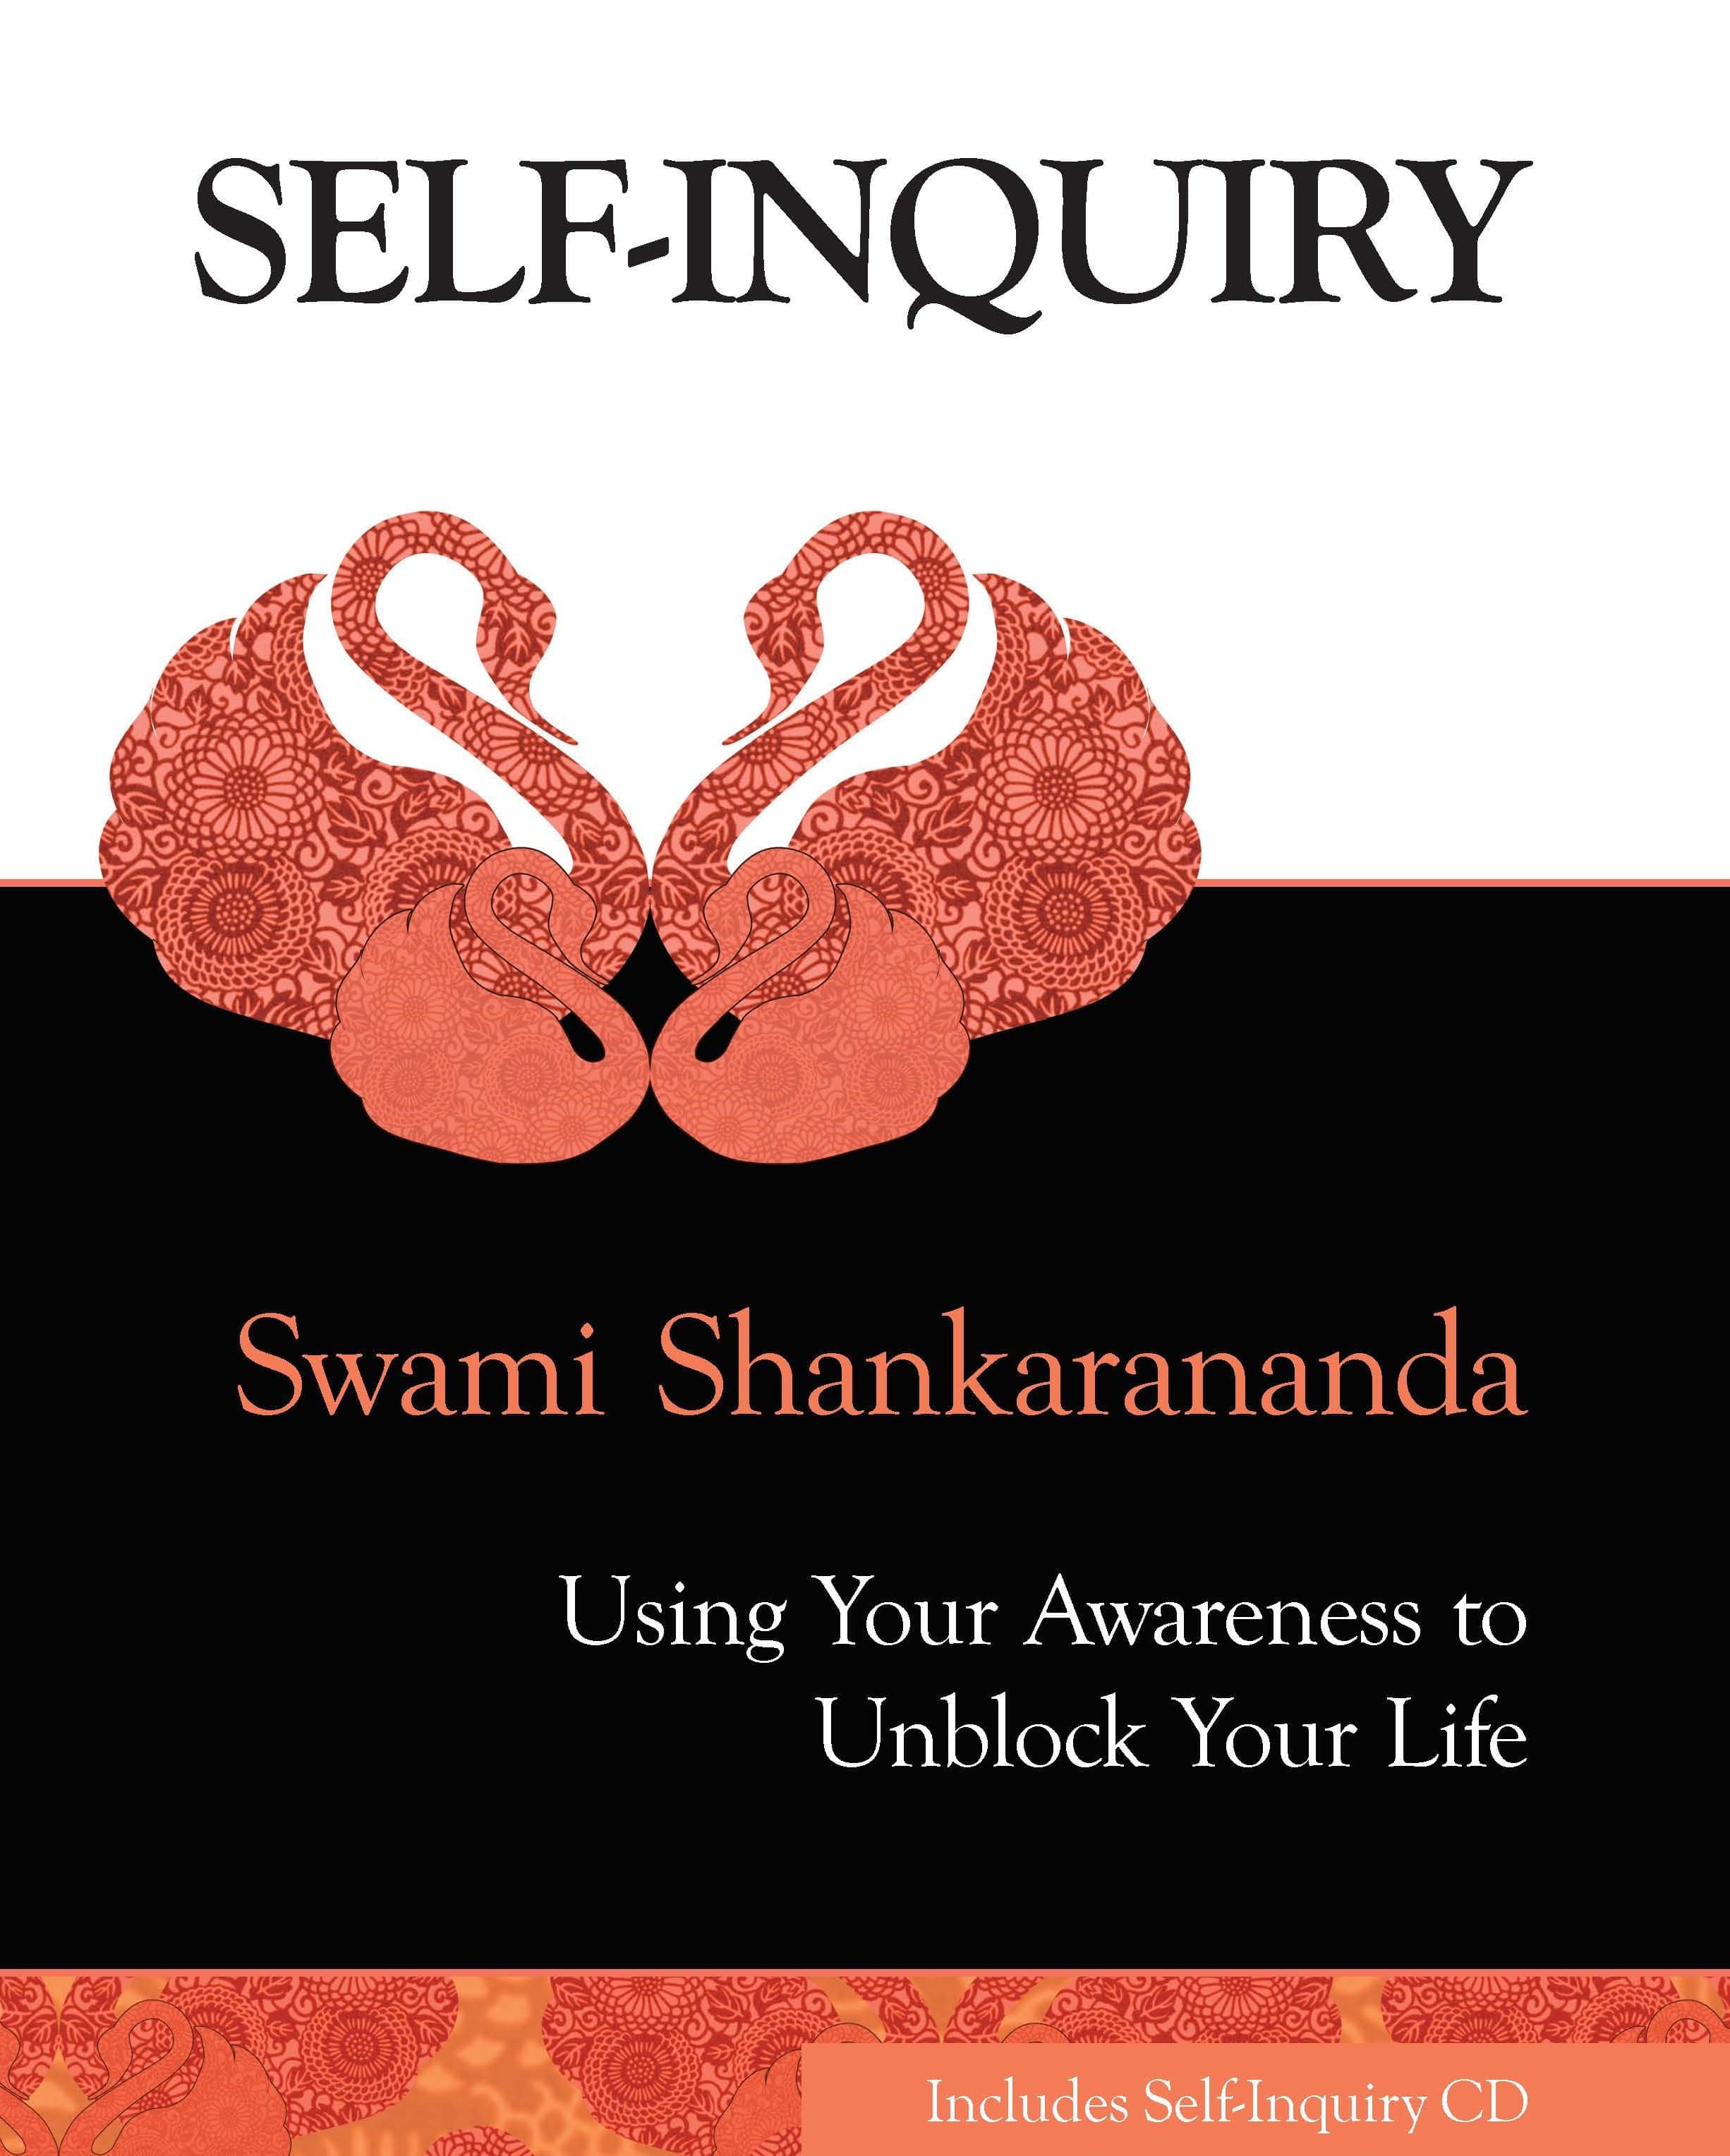 Self-inquiry CD - Track 4 - Who Am I? - Swami Shankarananda